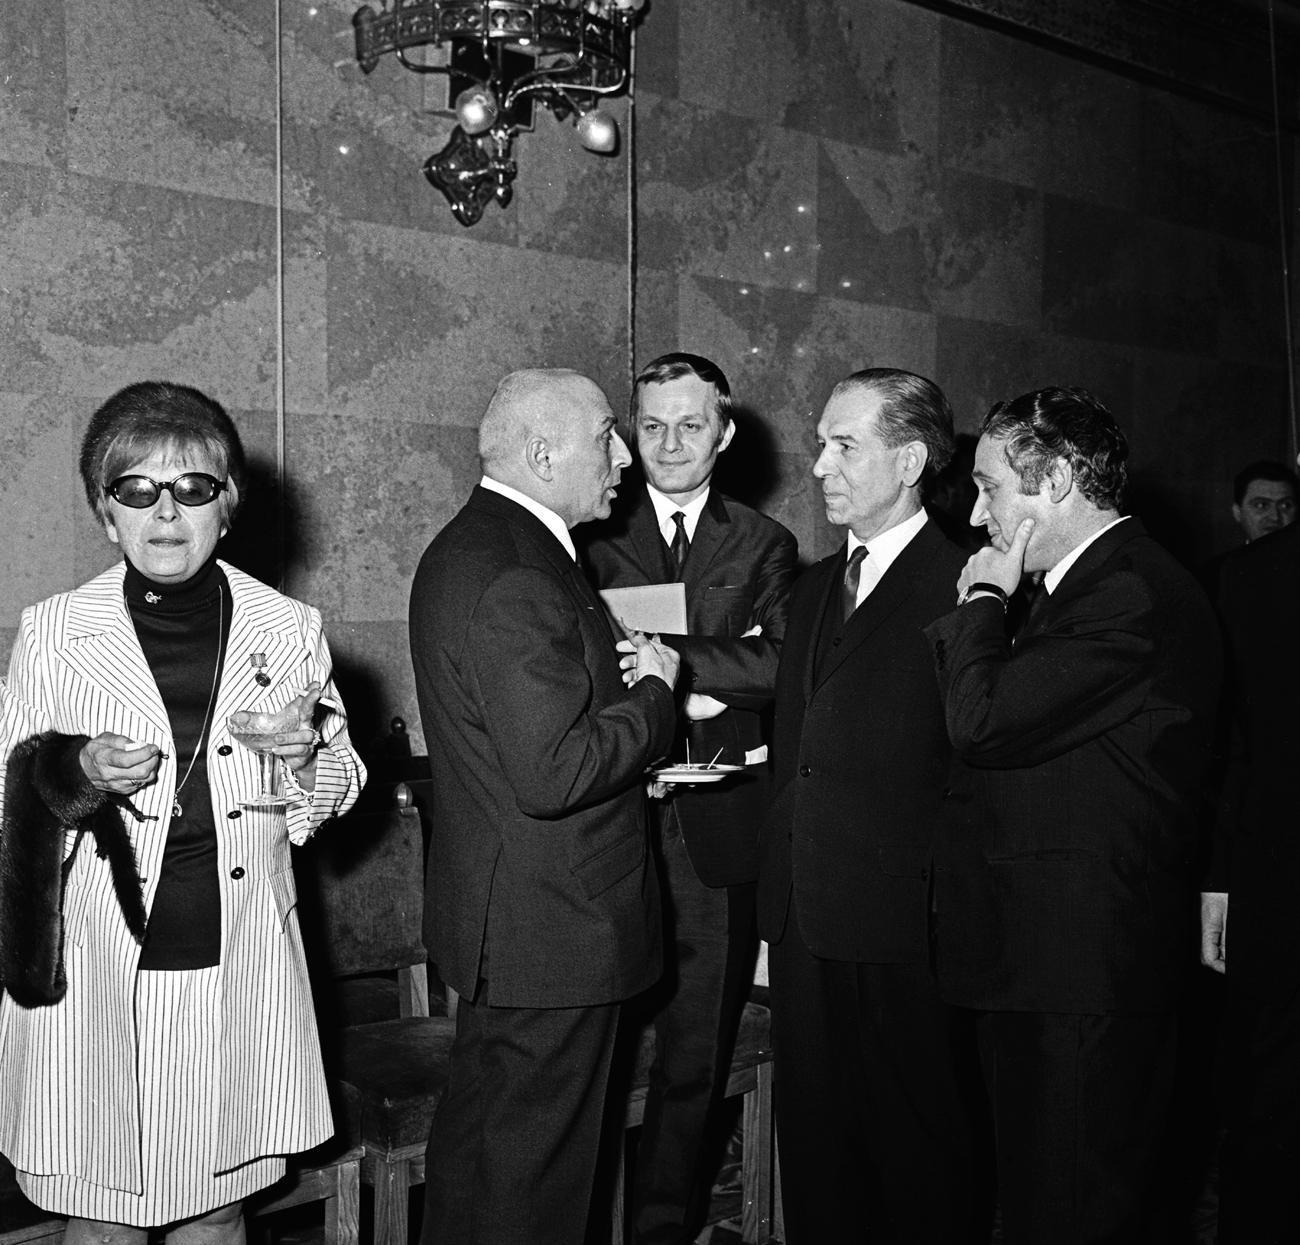 A képen Alfonzó és Darvas Iván érdemes művész alkot csoportot Fock Jenővel és Kazimir Károllyal 1969-ben a Parlamentben a kiváló és érdemes művészi díjak átadása után. Előttük balra egyedül álldogál Mezey Mária, aki azon az április 4-én kiváló művész